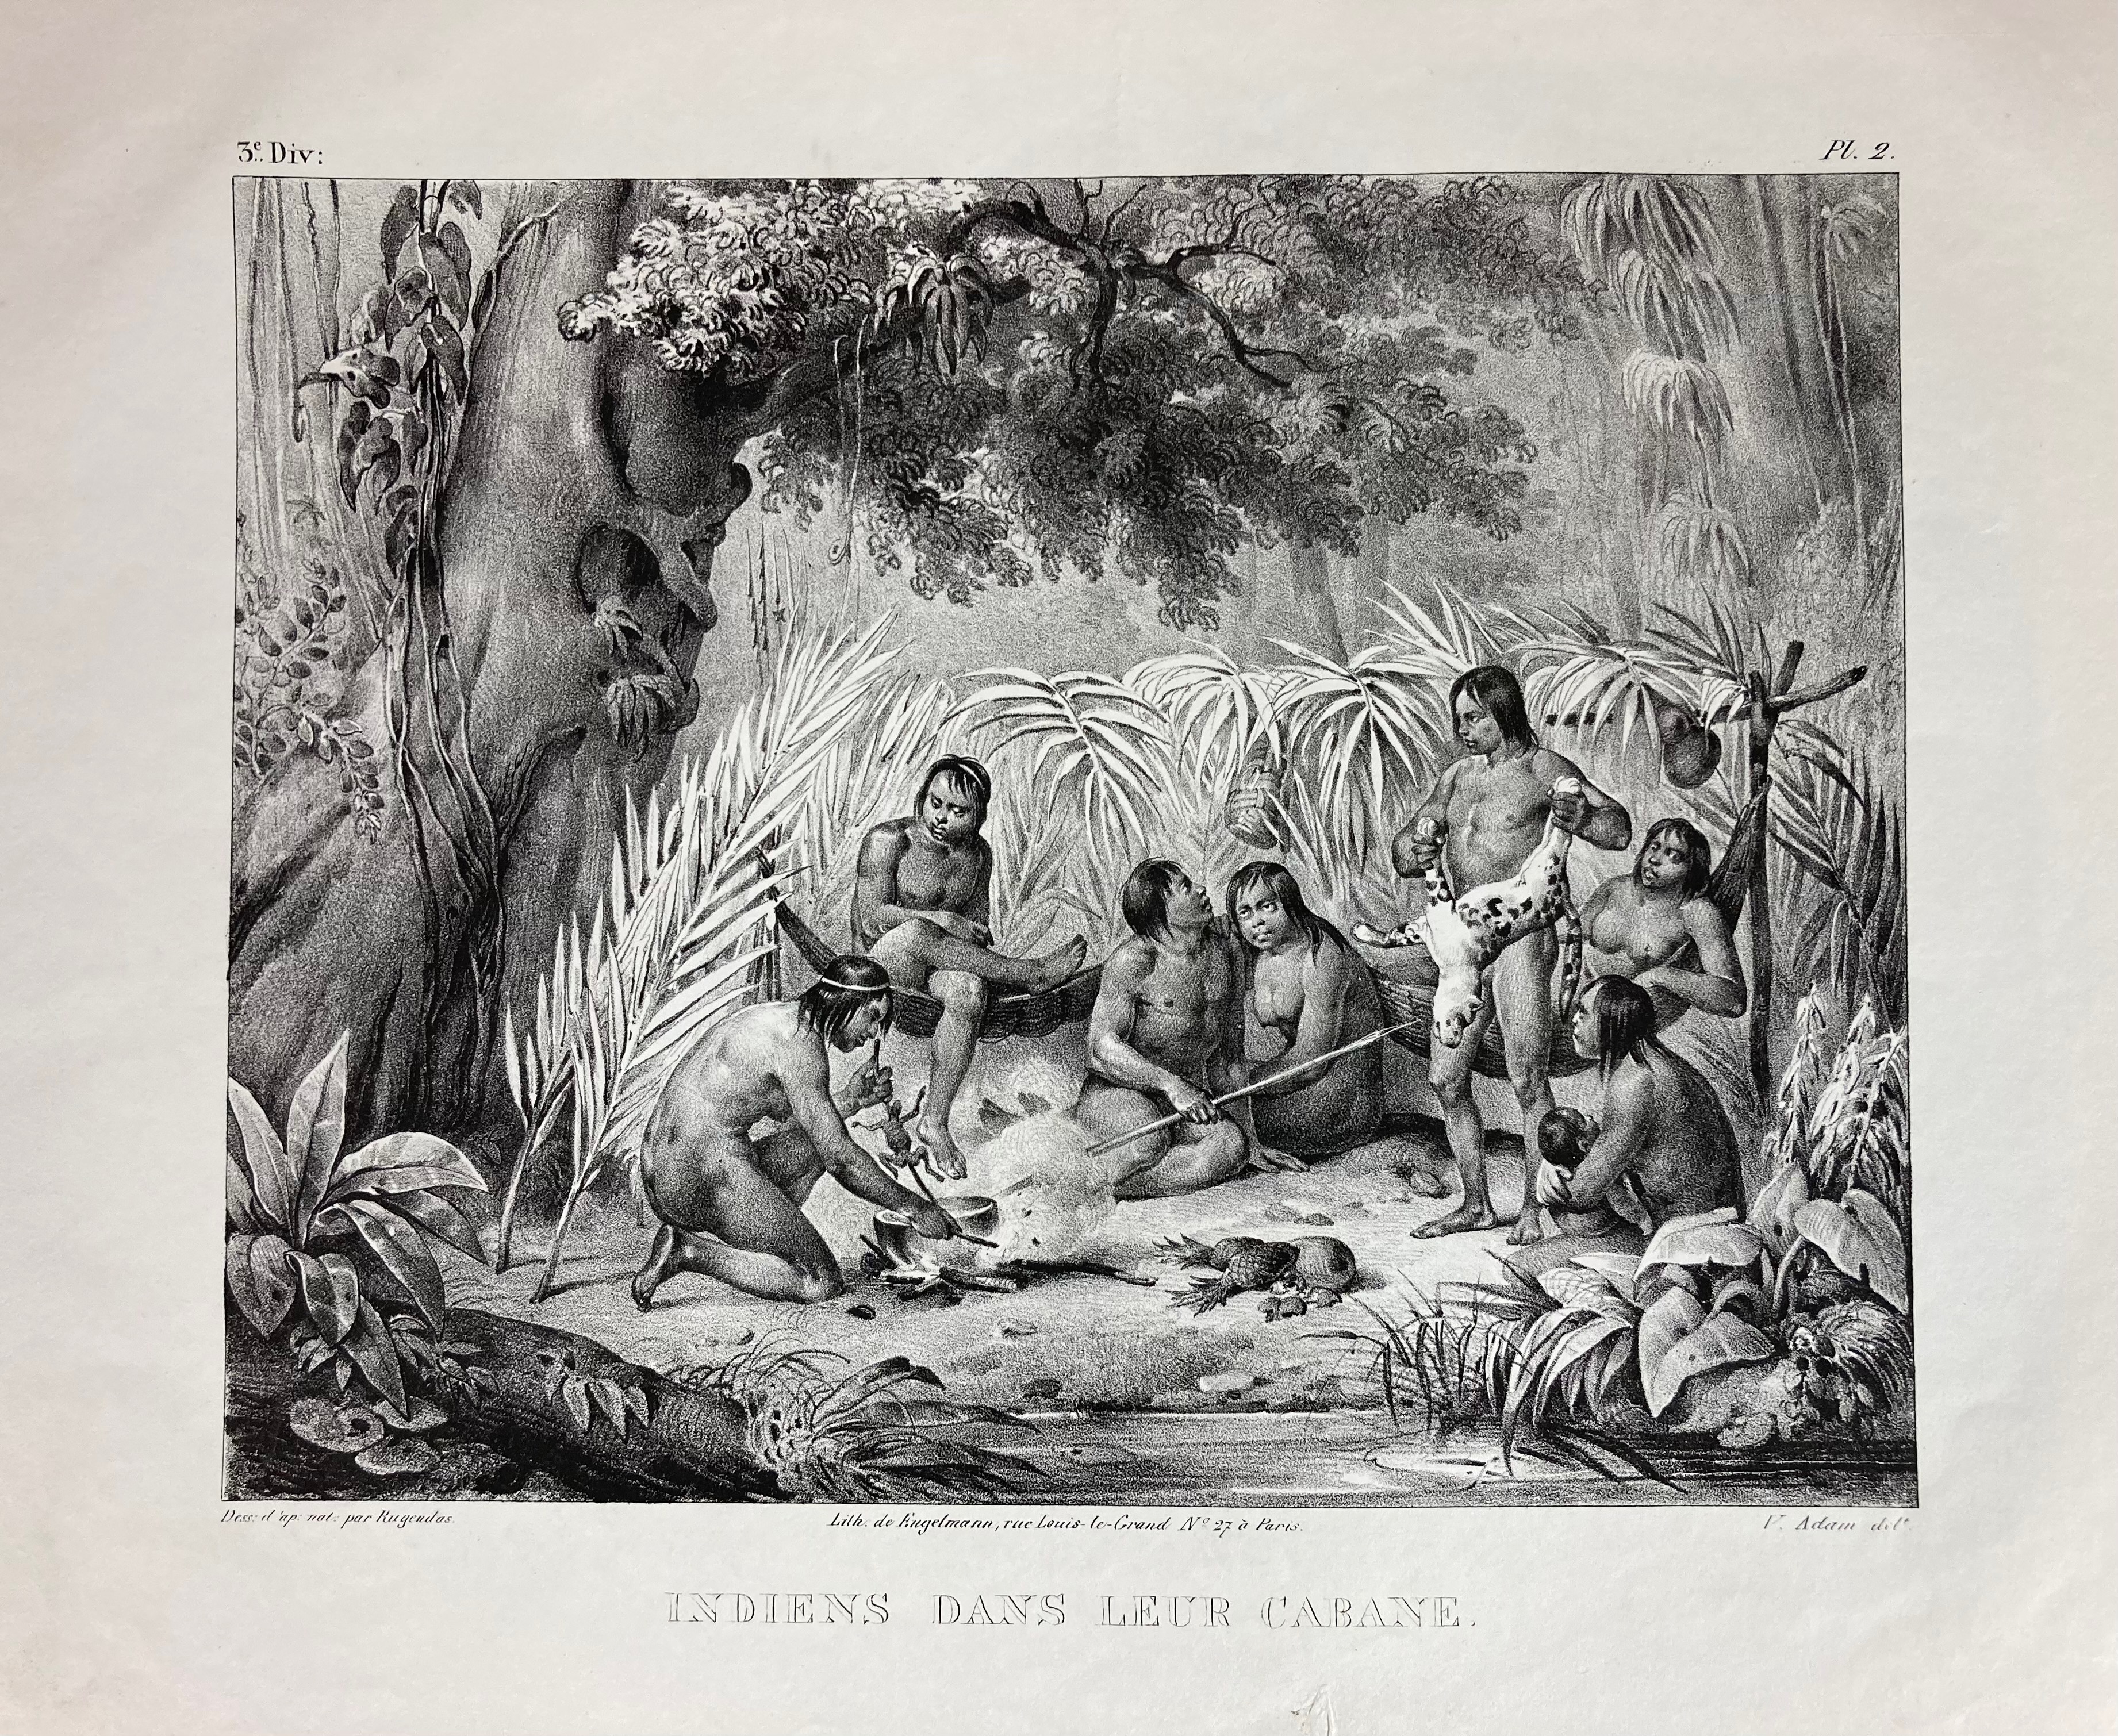 AMERICA -- BRAZIL -- "FAMILLE indienne" - "INDIENS dans leur cabane" - "PONT de lianne" - "DANSE - Image 3 of 6